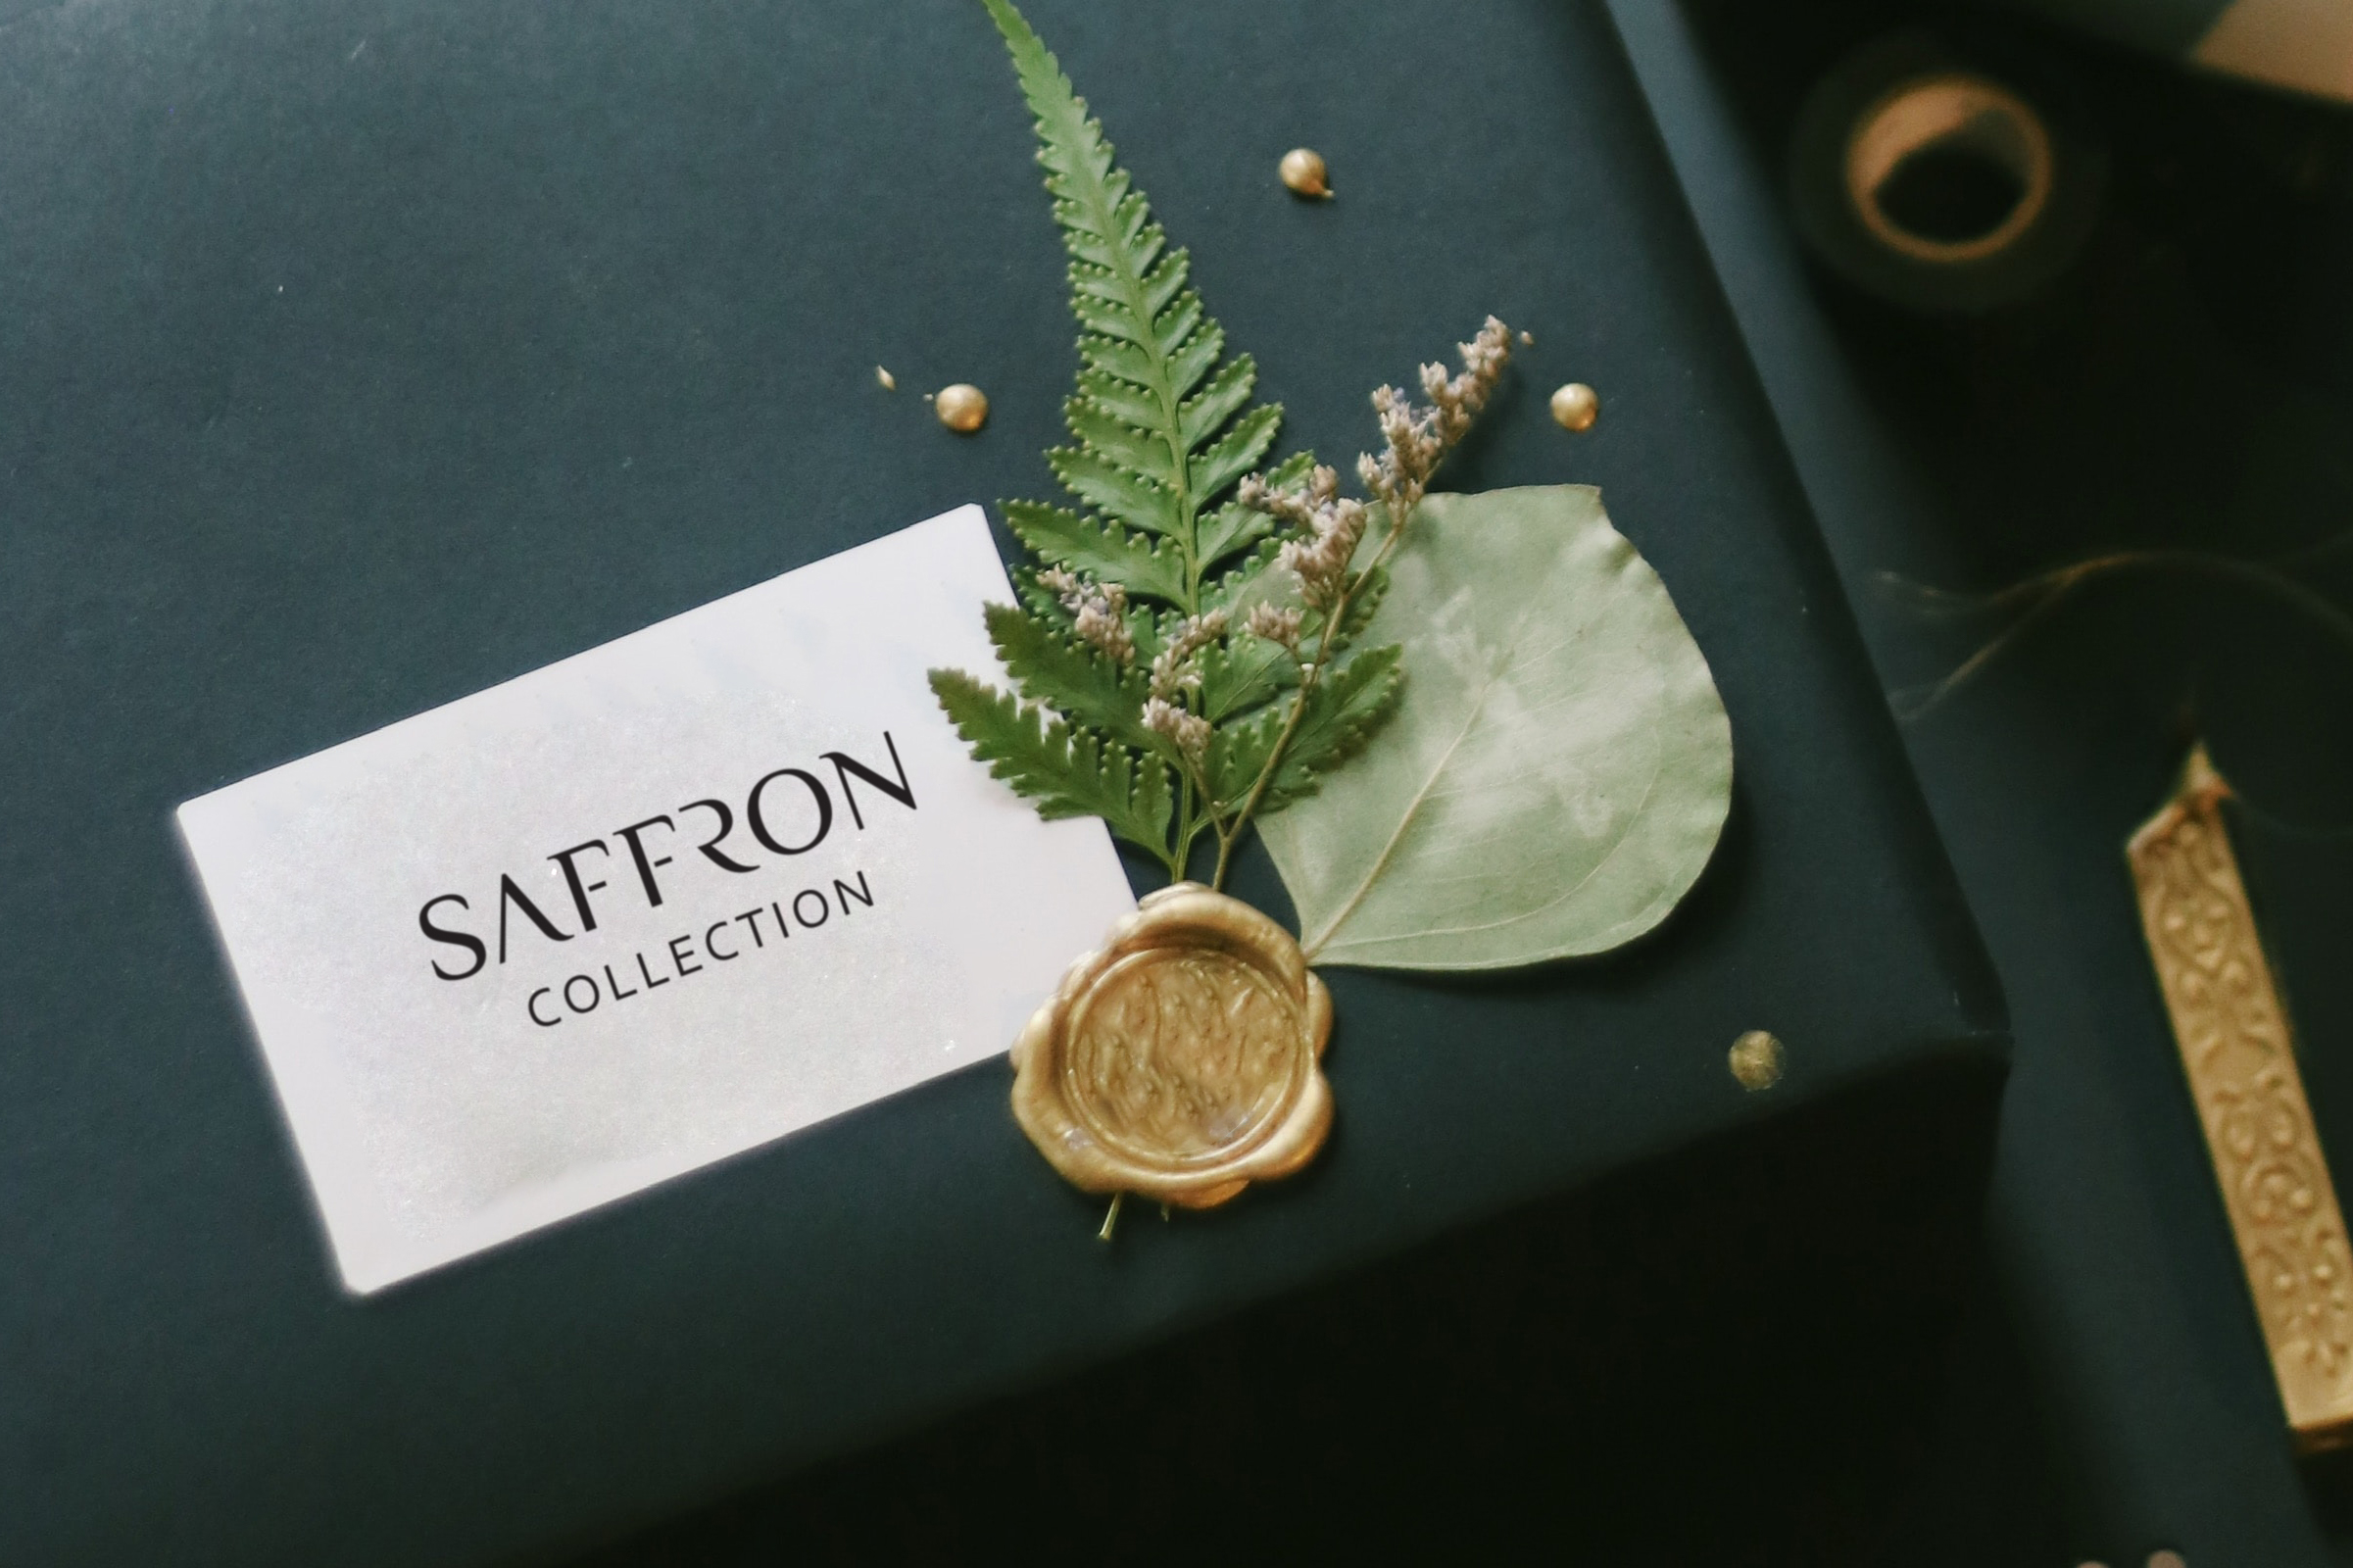 Saffron Collection